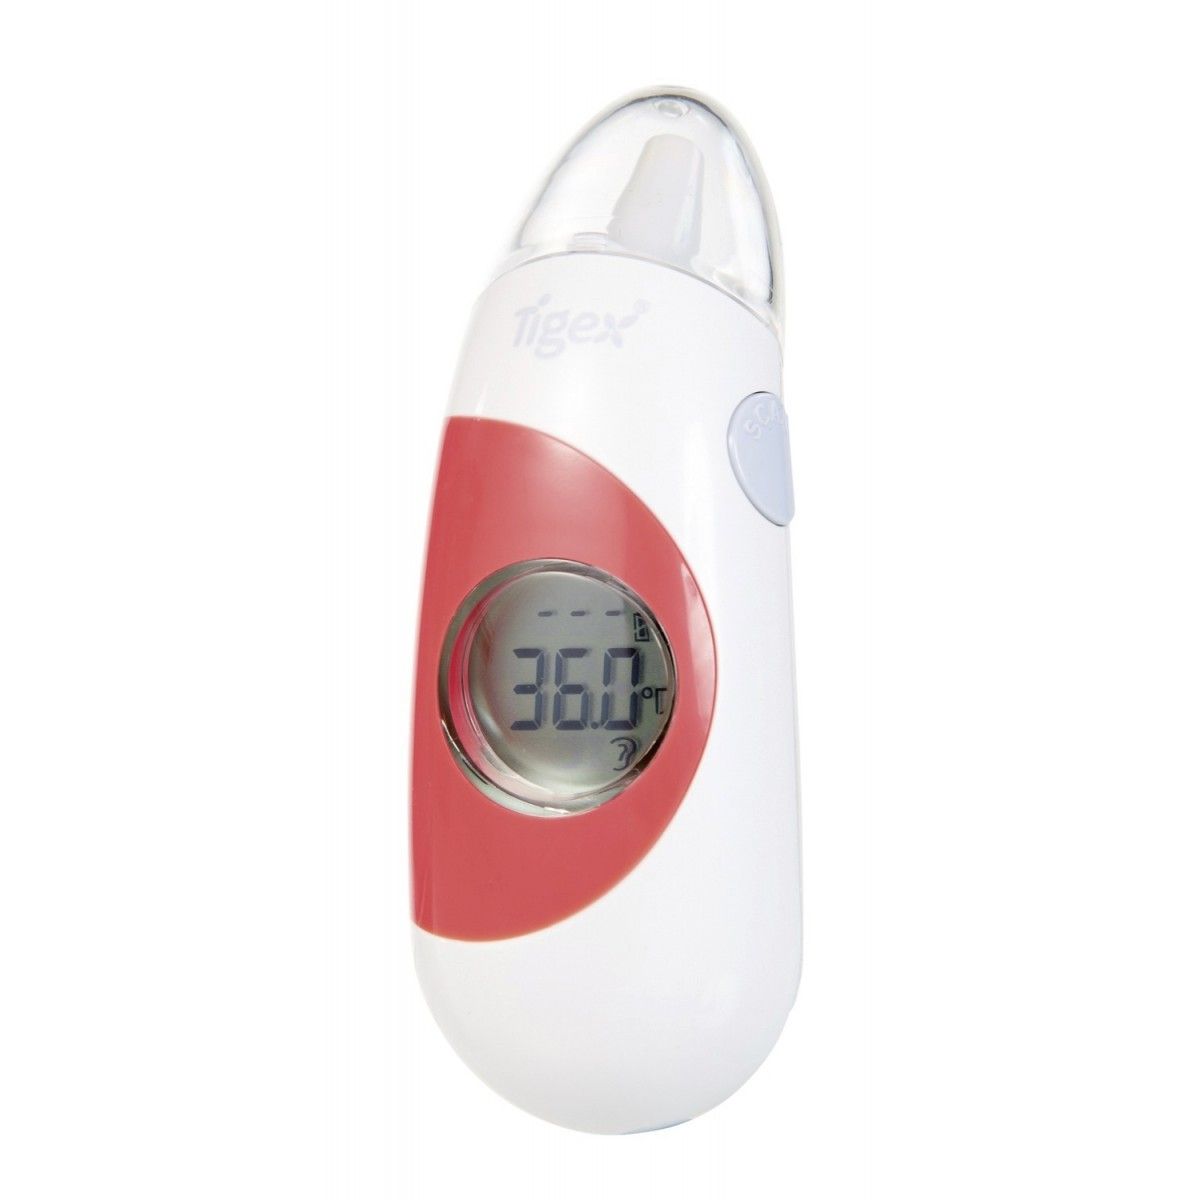 Thermomètre de bain - Tigex